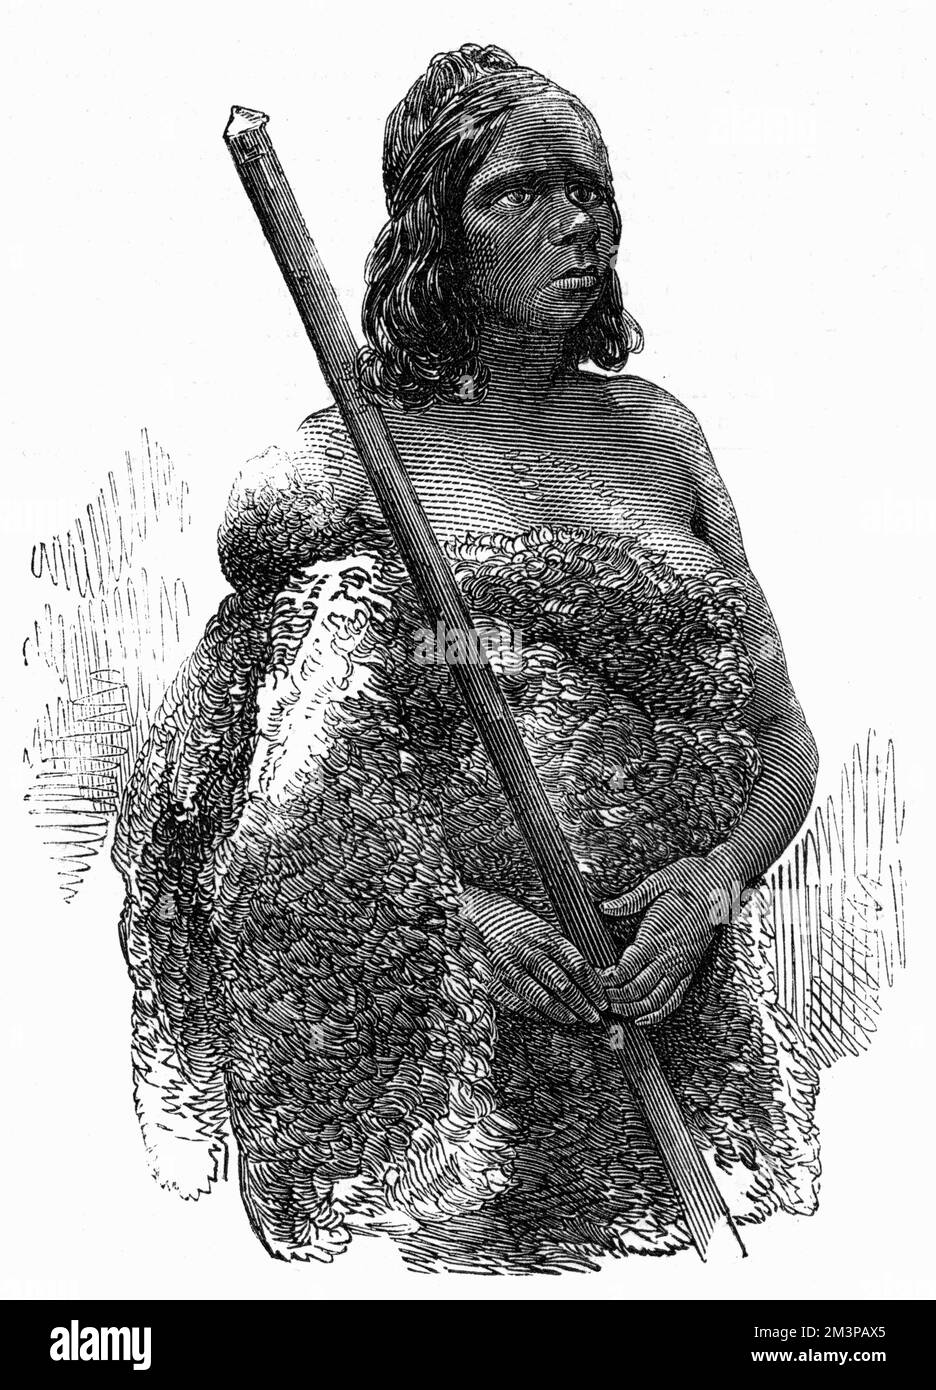 Lubra, eine australische Ureinwohnerin von Port Philip, wurde 1850 mit ihrem Jagdspeer fotografiert. Sie trägt hier Schaffell, mit Tätowierungen oder Vertikutierungen auf der Brust. Datum: 1850 Stockfoto